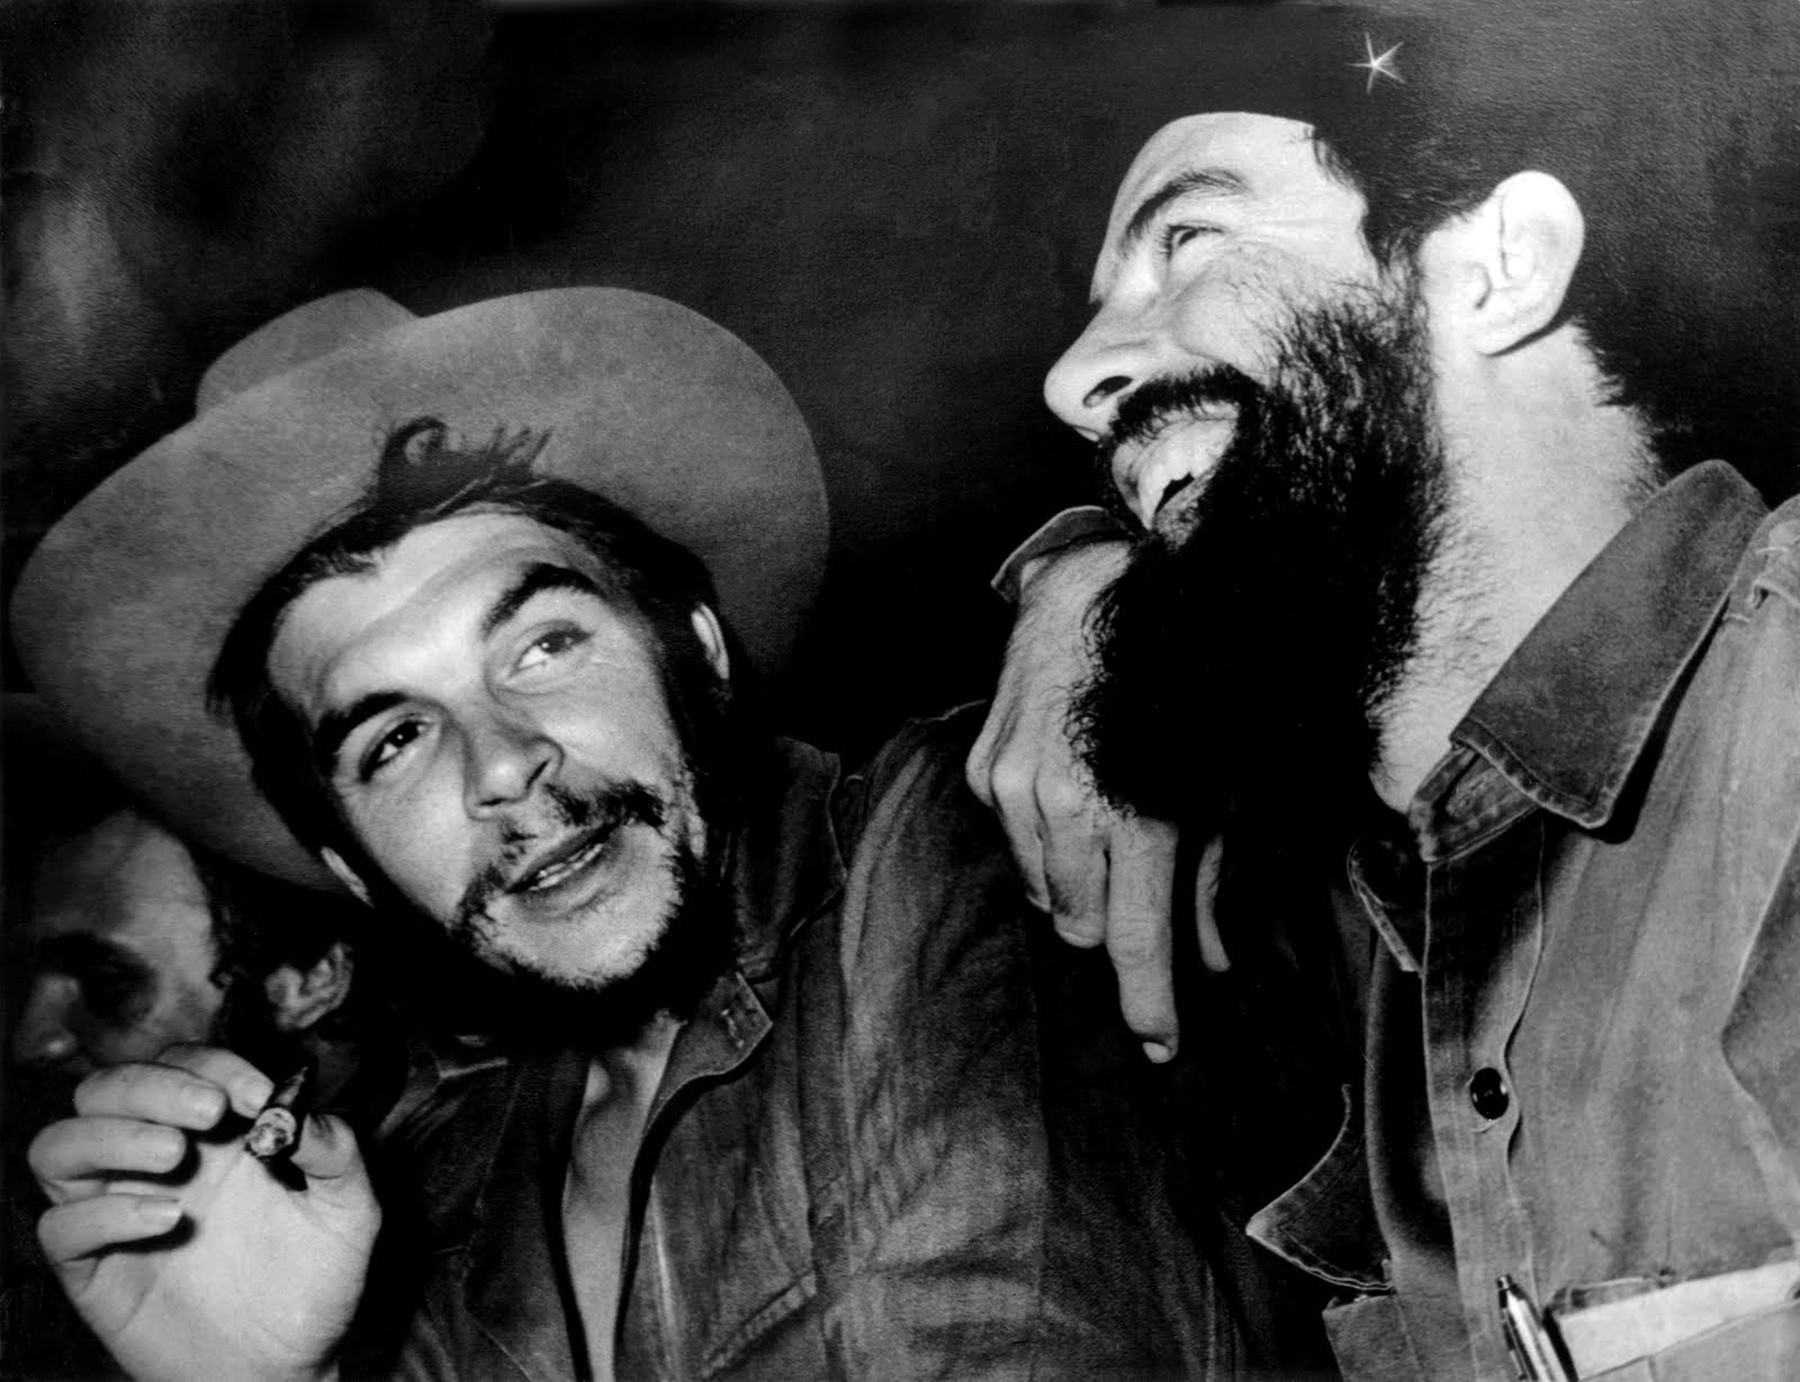 Cuba: Che  Guevara (centre) talks with Camilo Cienfuegos (right), Fidel Castro just visible to left